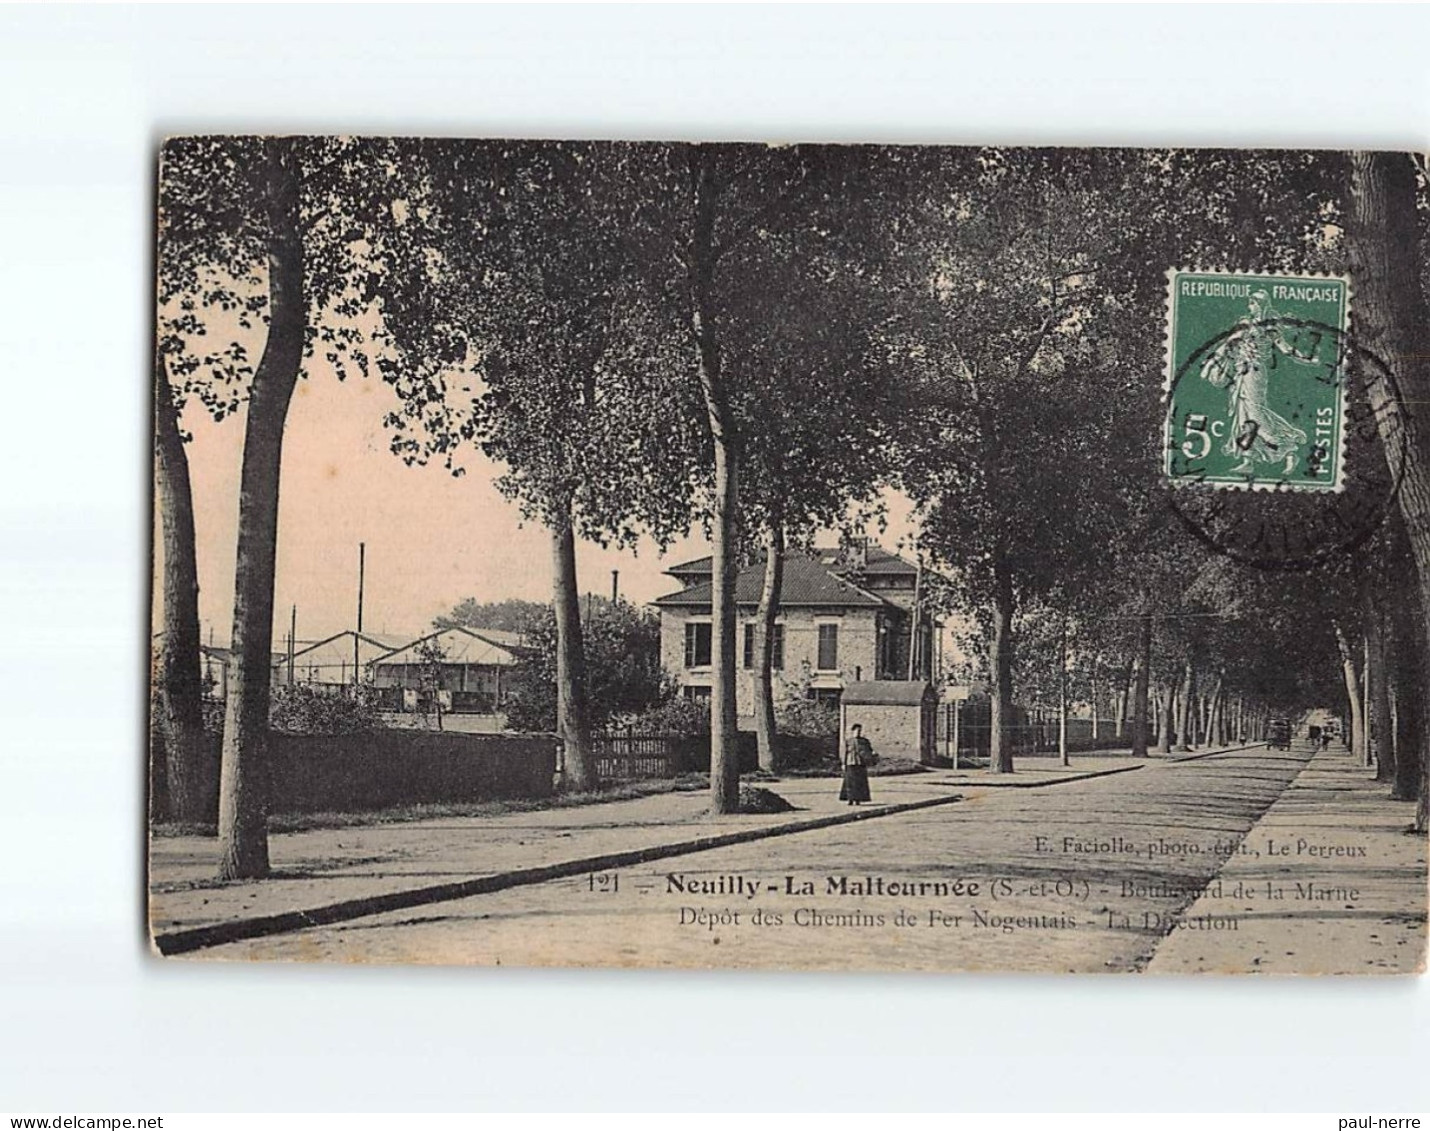 NEUILLY PLAISANCE : La Maltournée, Boulevard De La Mairie, Dépôt Des Chemins De Fer Nogentais, La Direction - état - Neuilly Plaisance